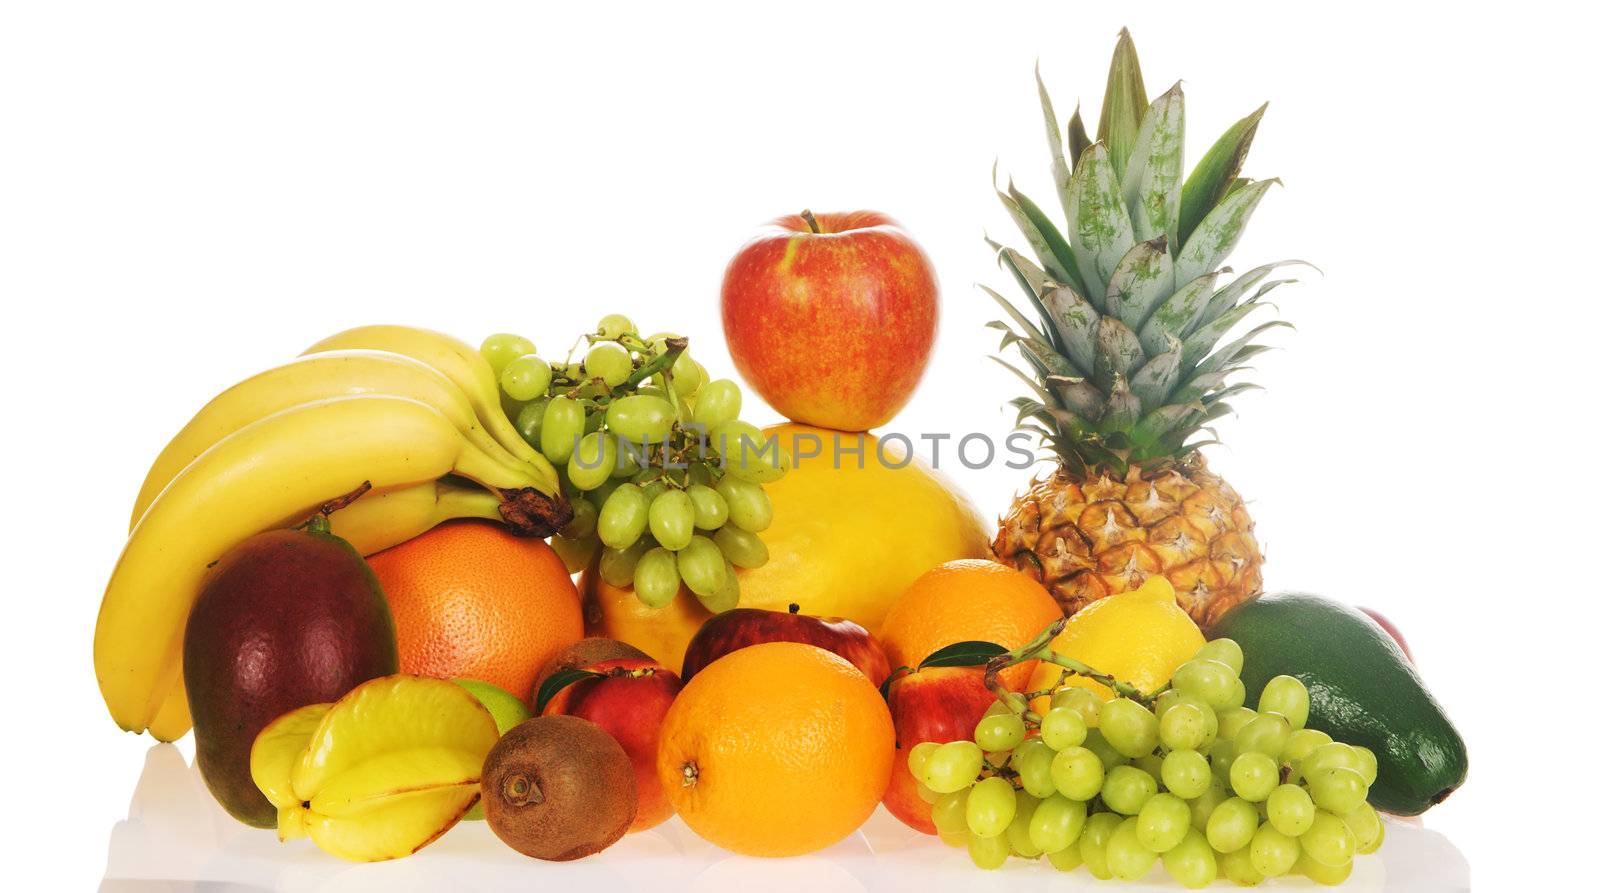 Fruit plenty by Gdolgikh